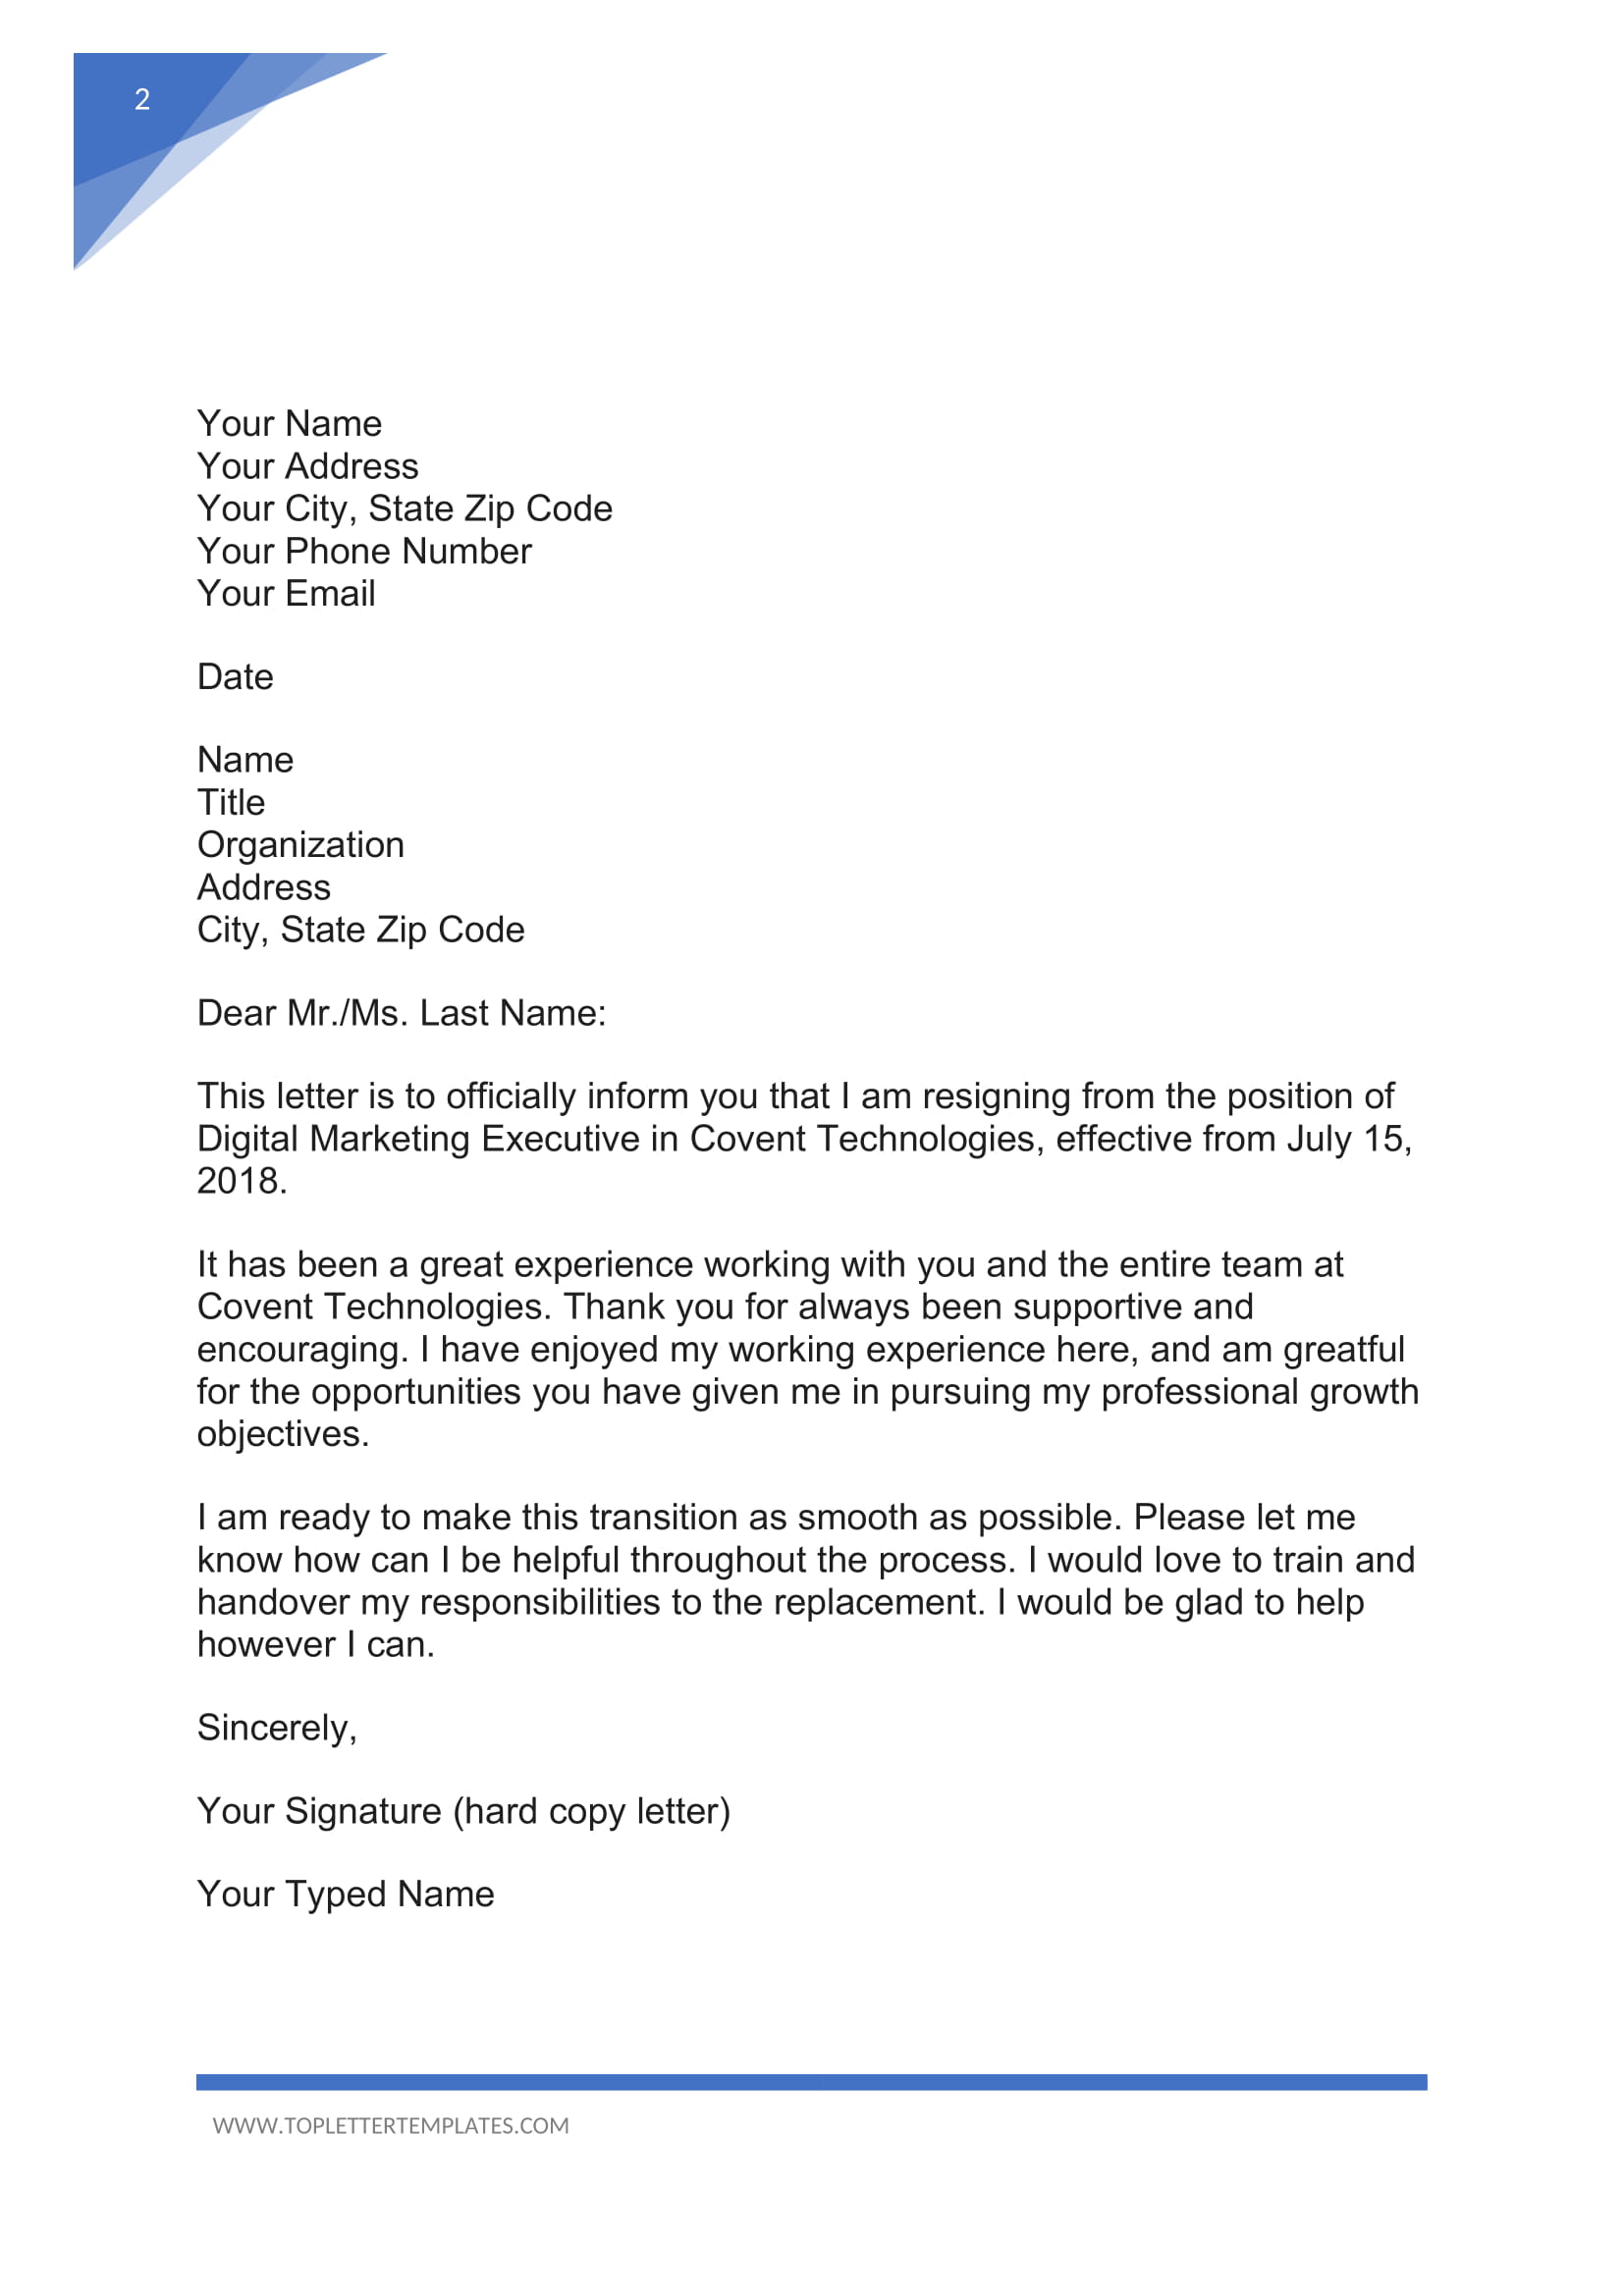 Work Resignation Letter Samples from toplettertemplates.com